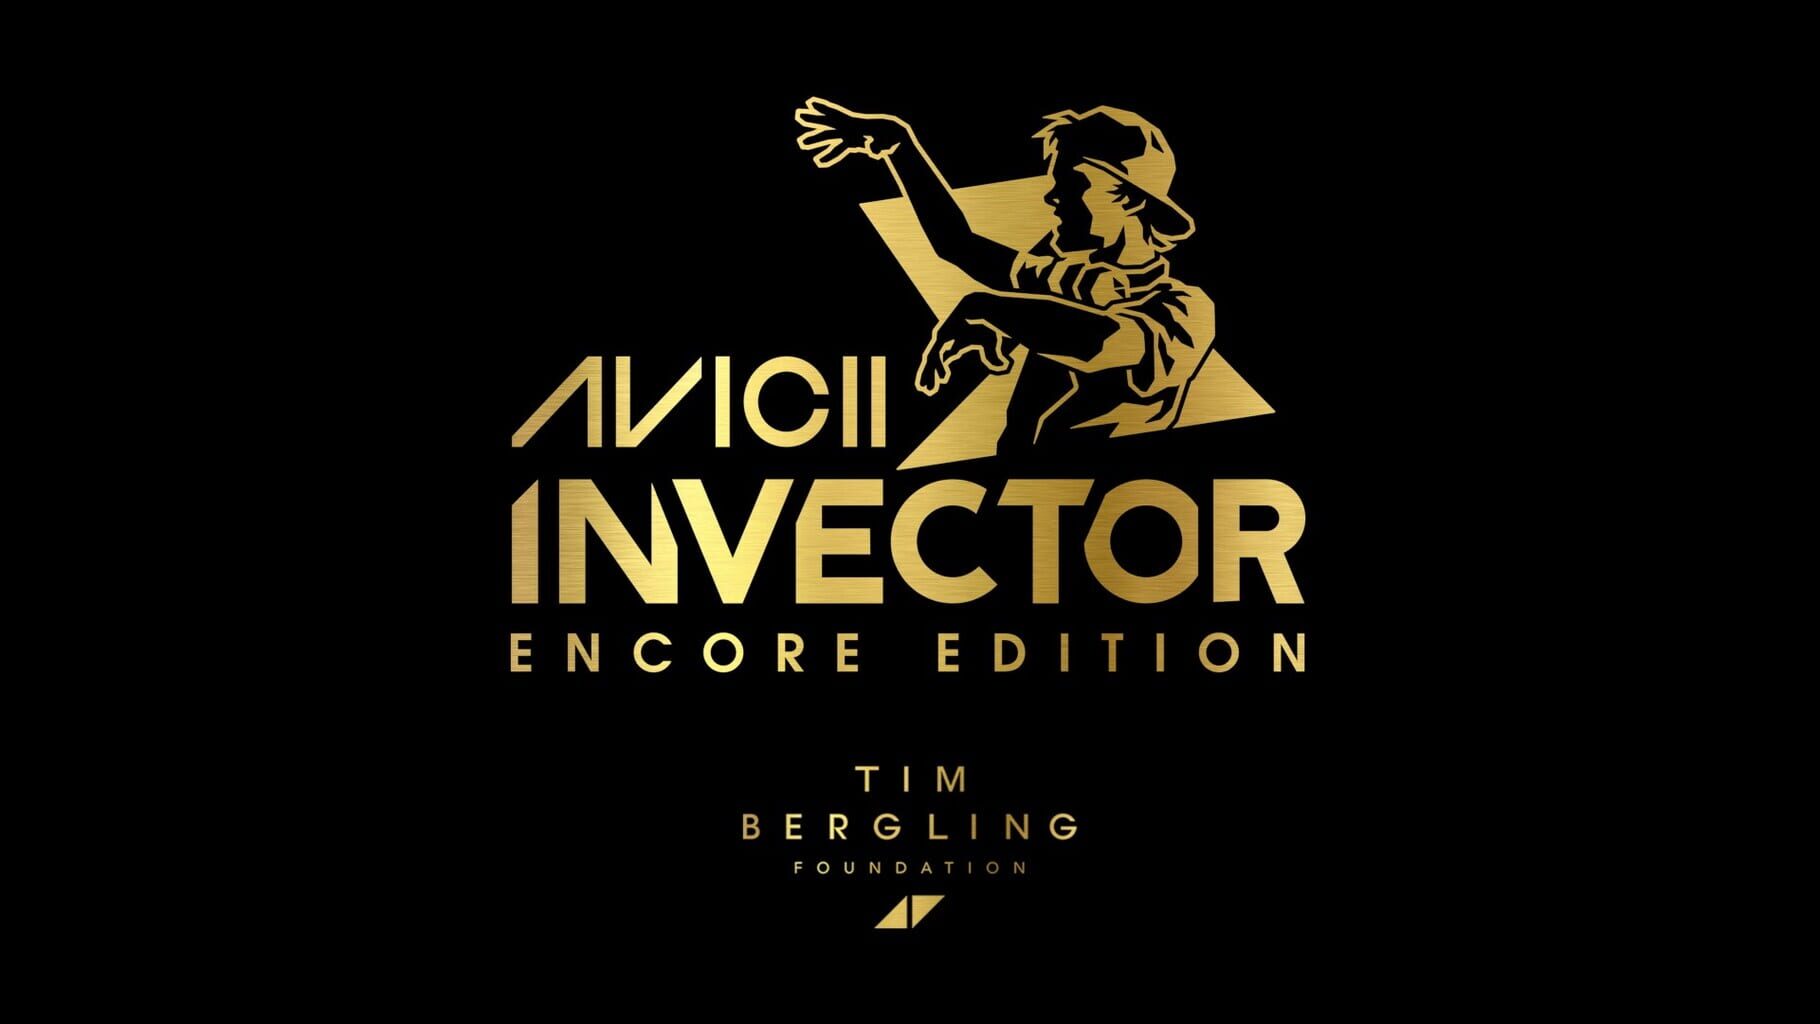 Avicii Invector: Encore Edition artwork